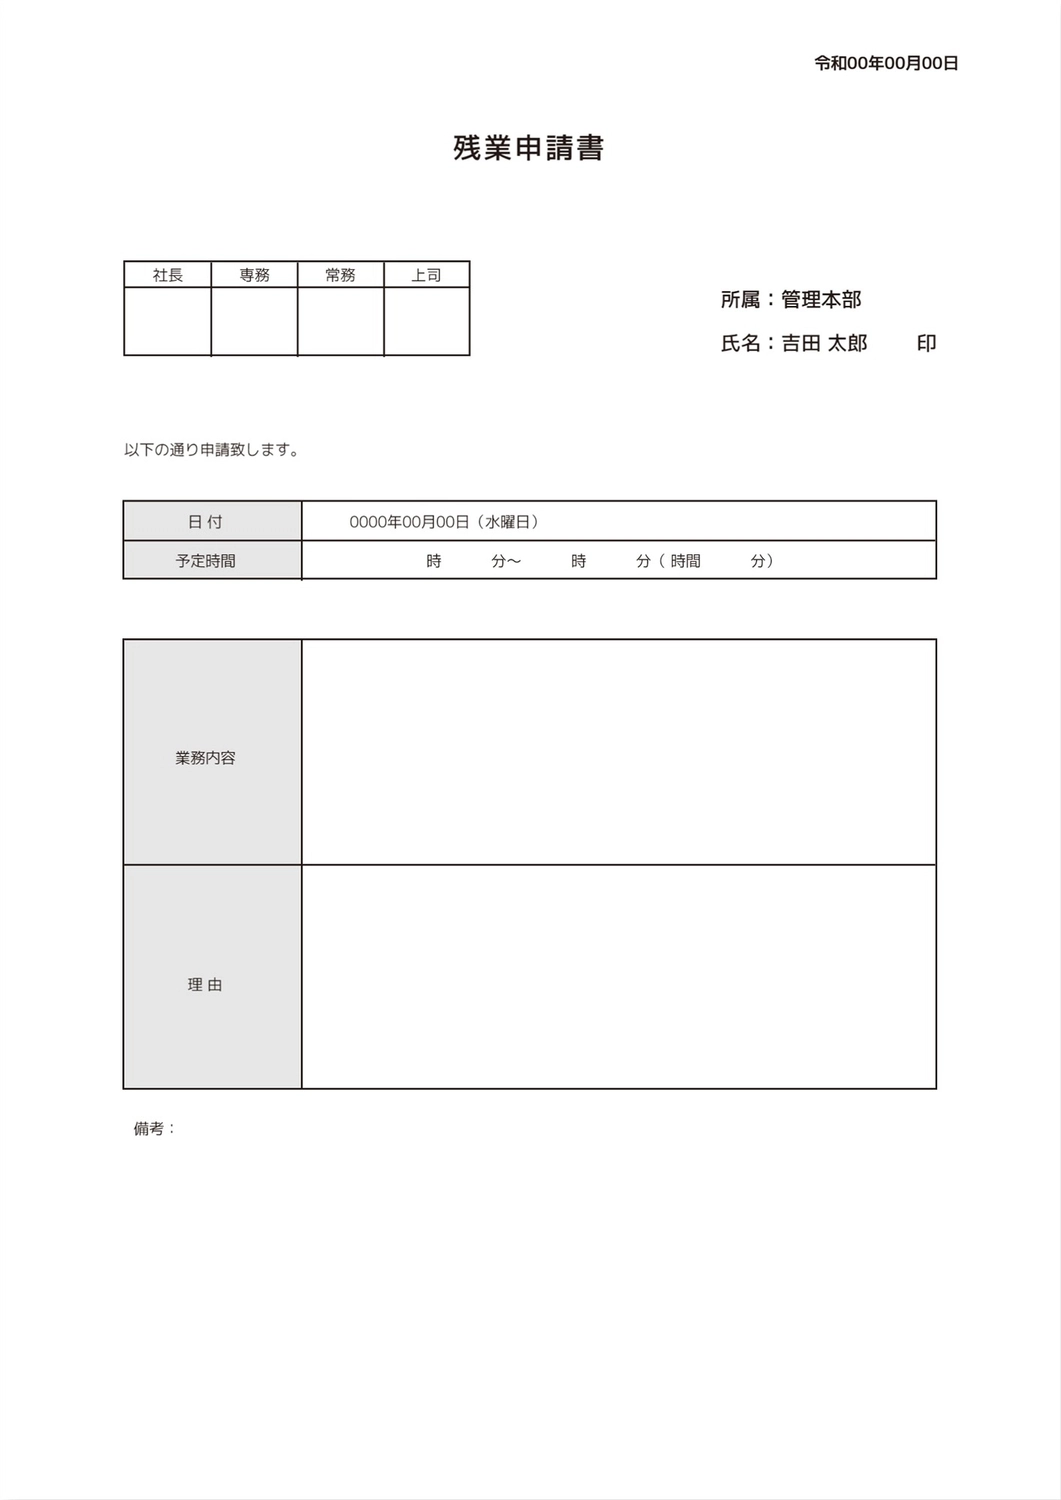 残業申請書テンプレート, 단순, 인쇄, 만들기, A4 문서 템플릿